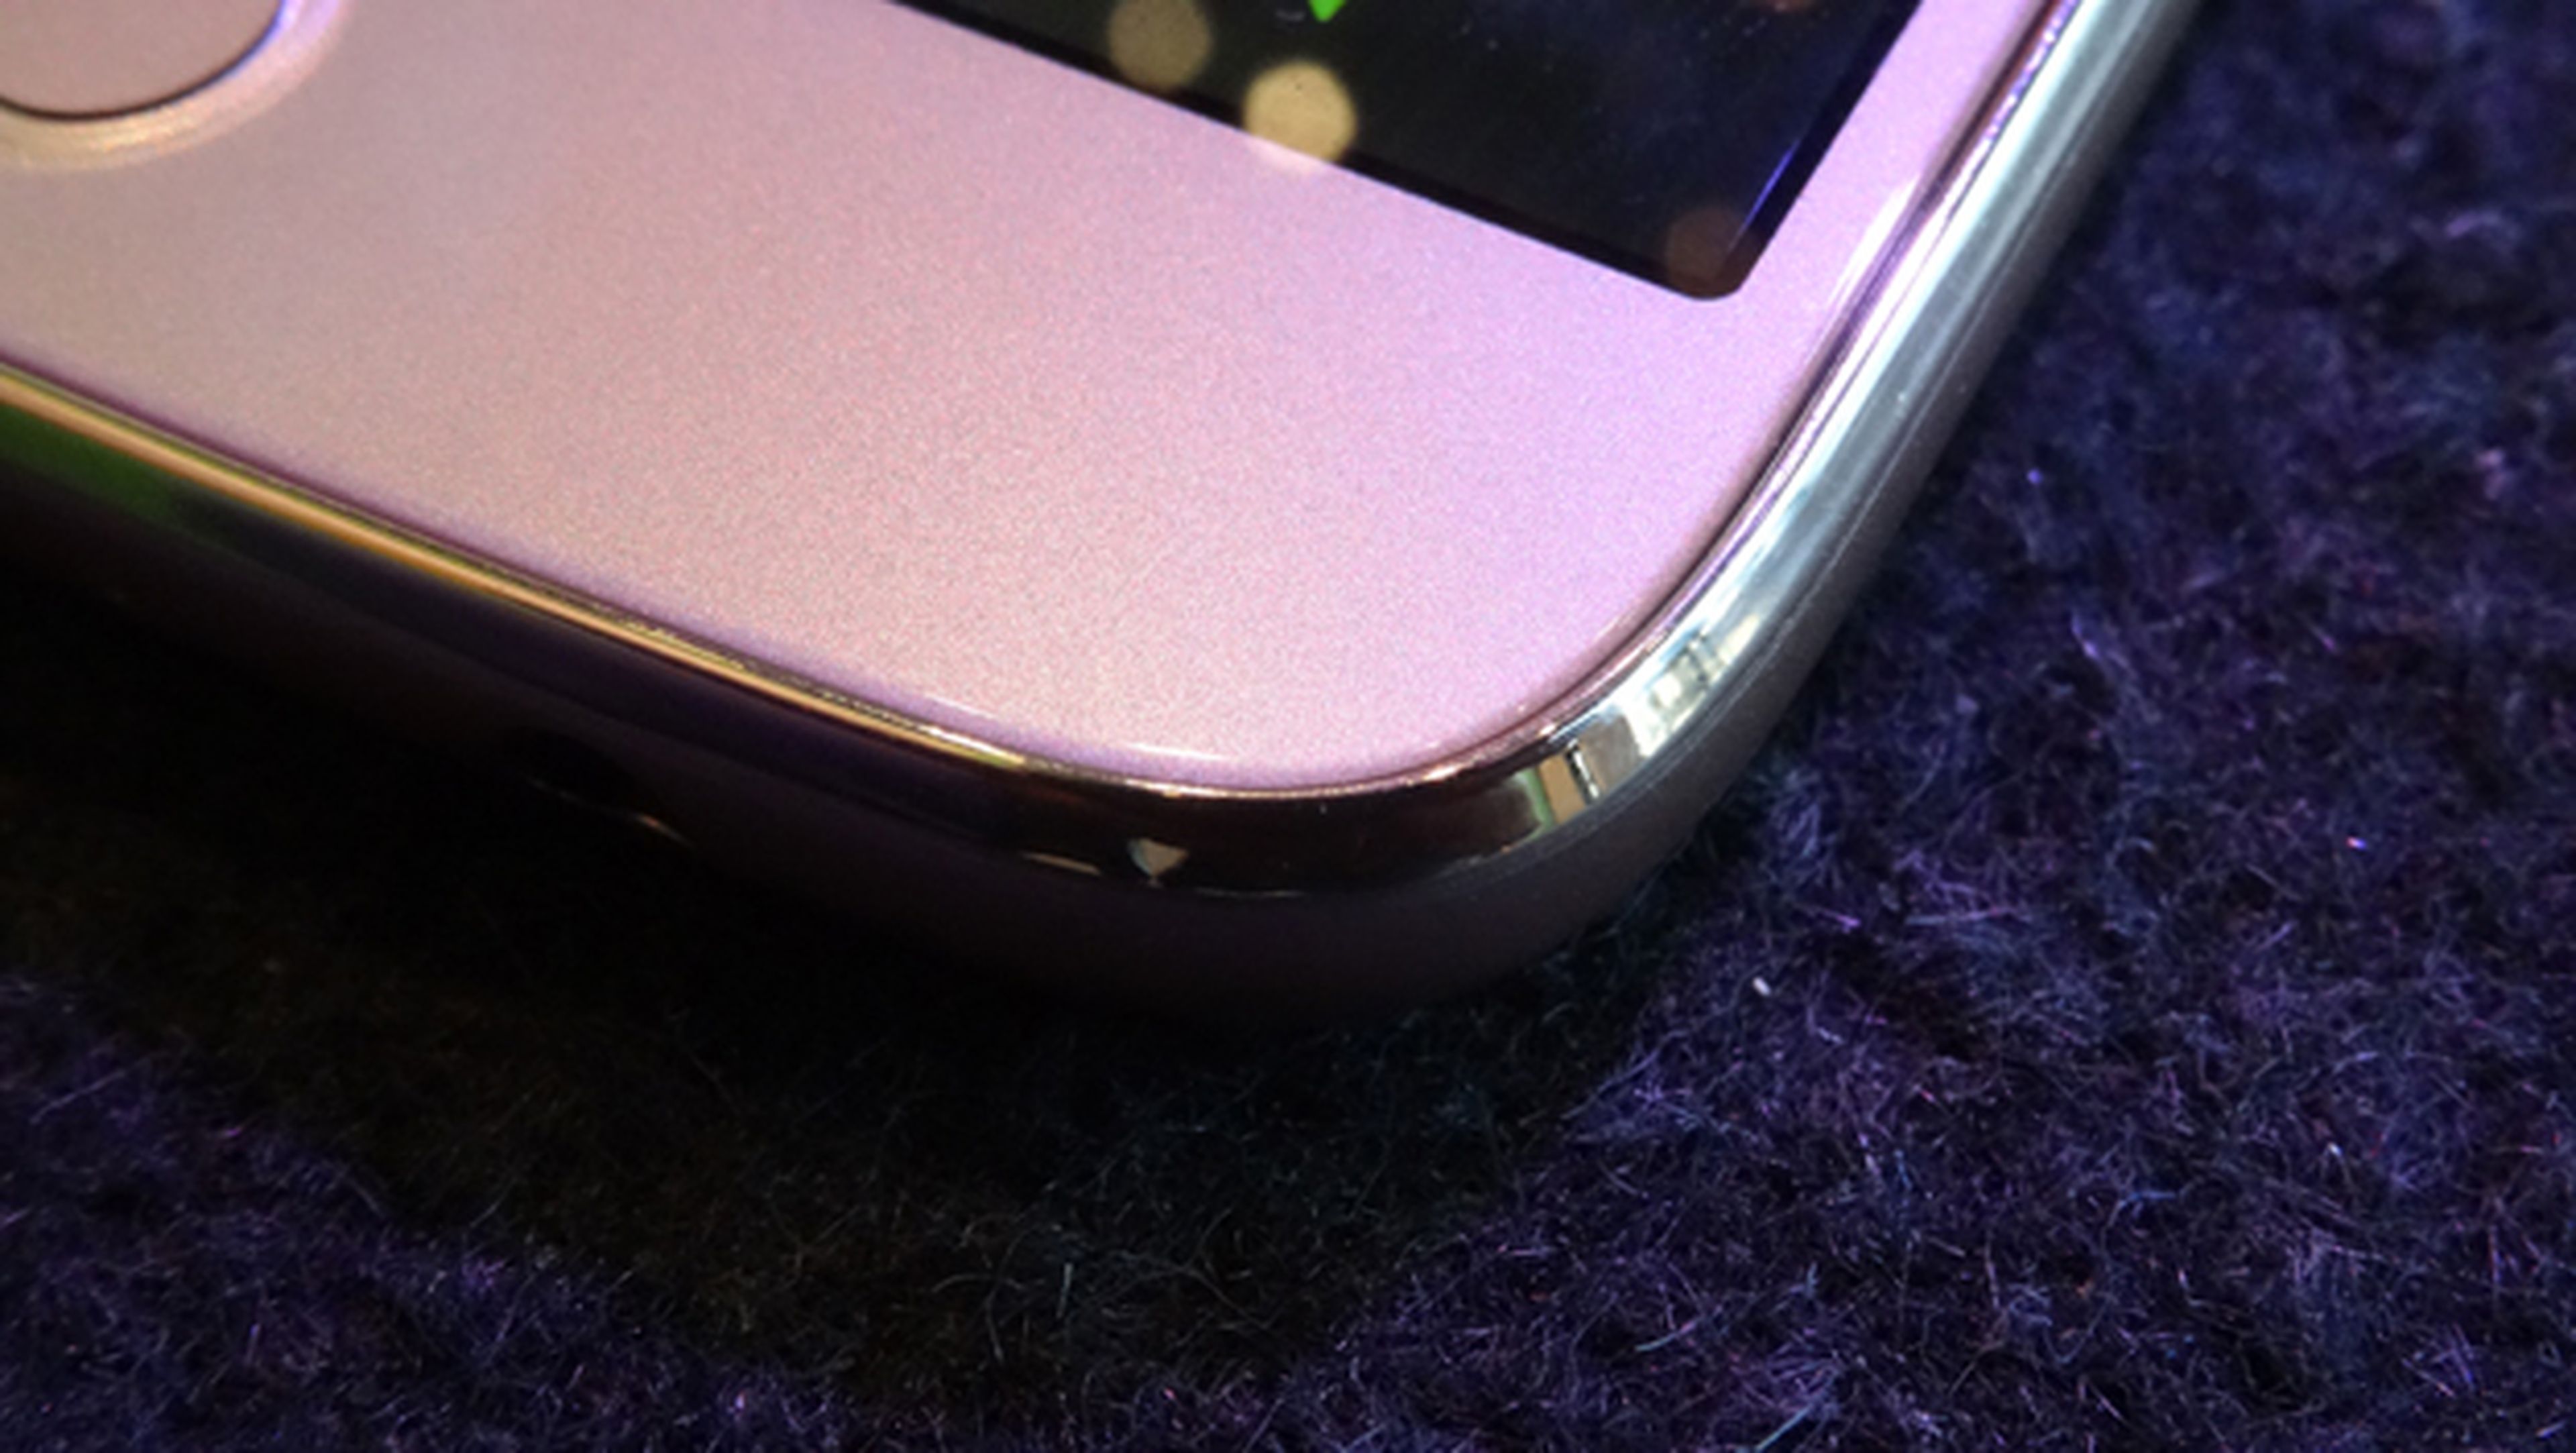 Detalle de los laterales del Moto G5 Plus visto de frente